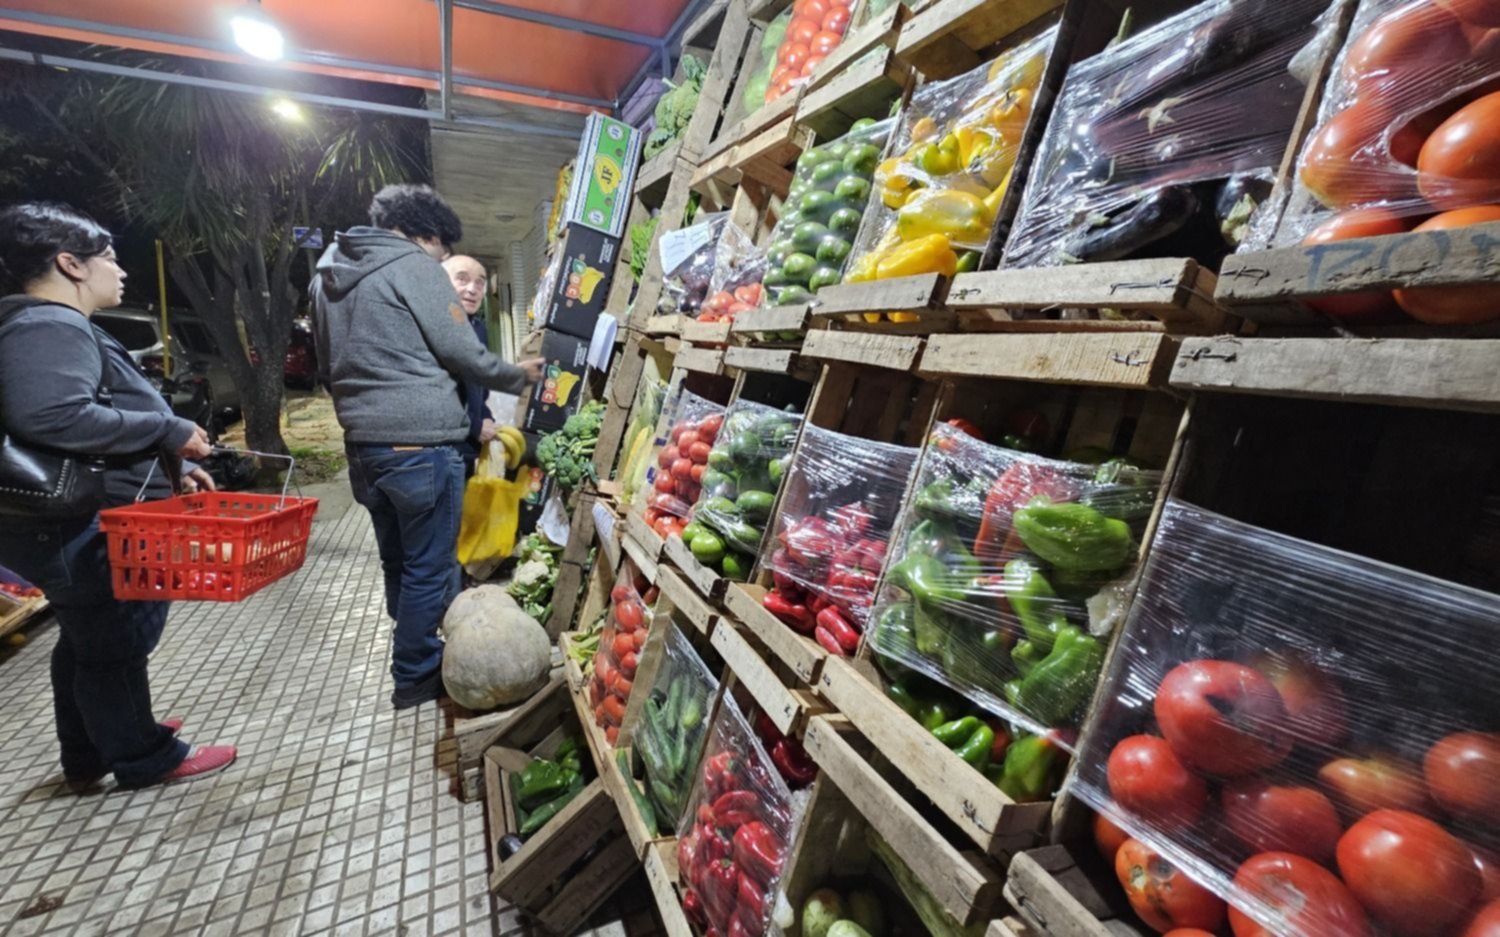 Mañana en EL DIA: el fenómeno de las frutas y verduras "de la Región" pero importadas